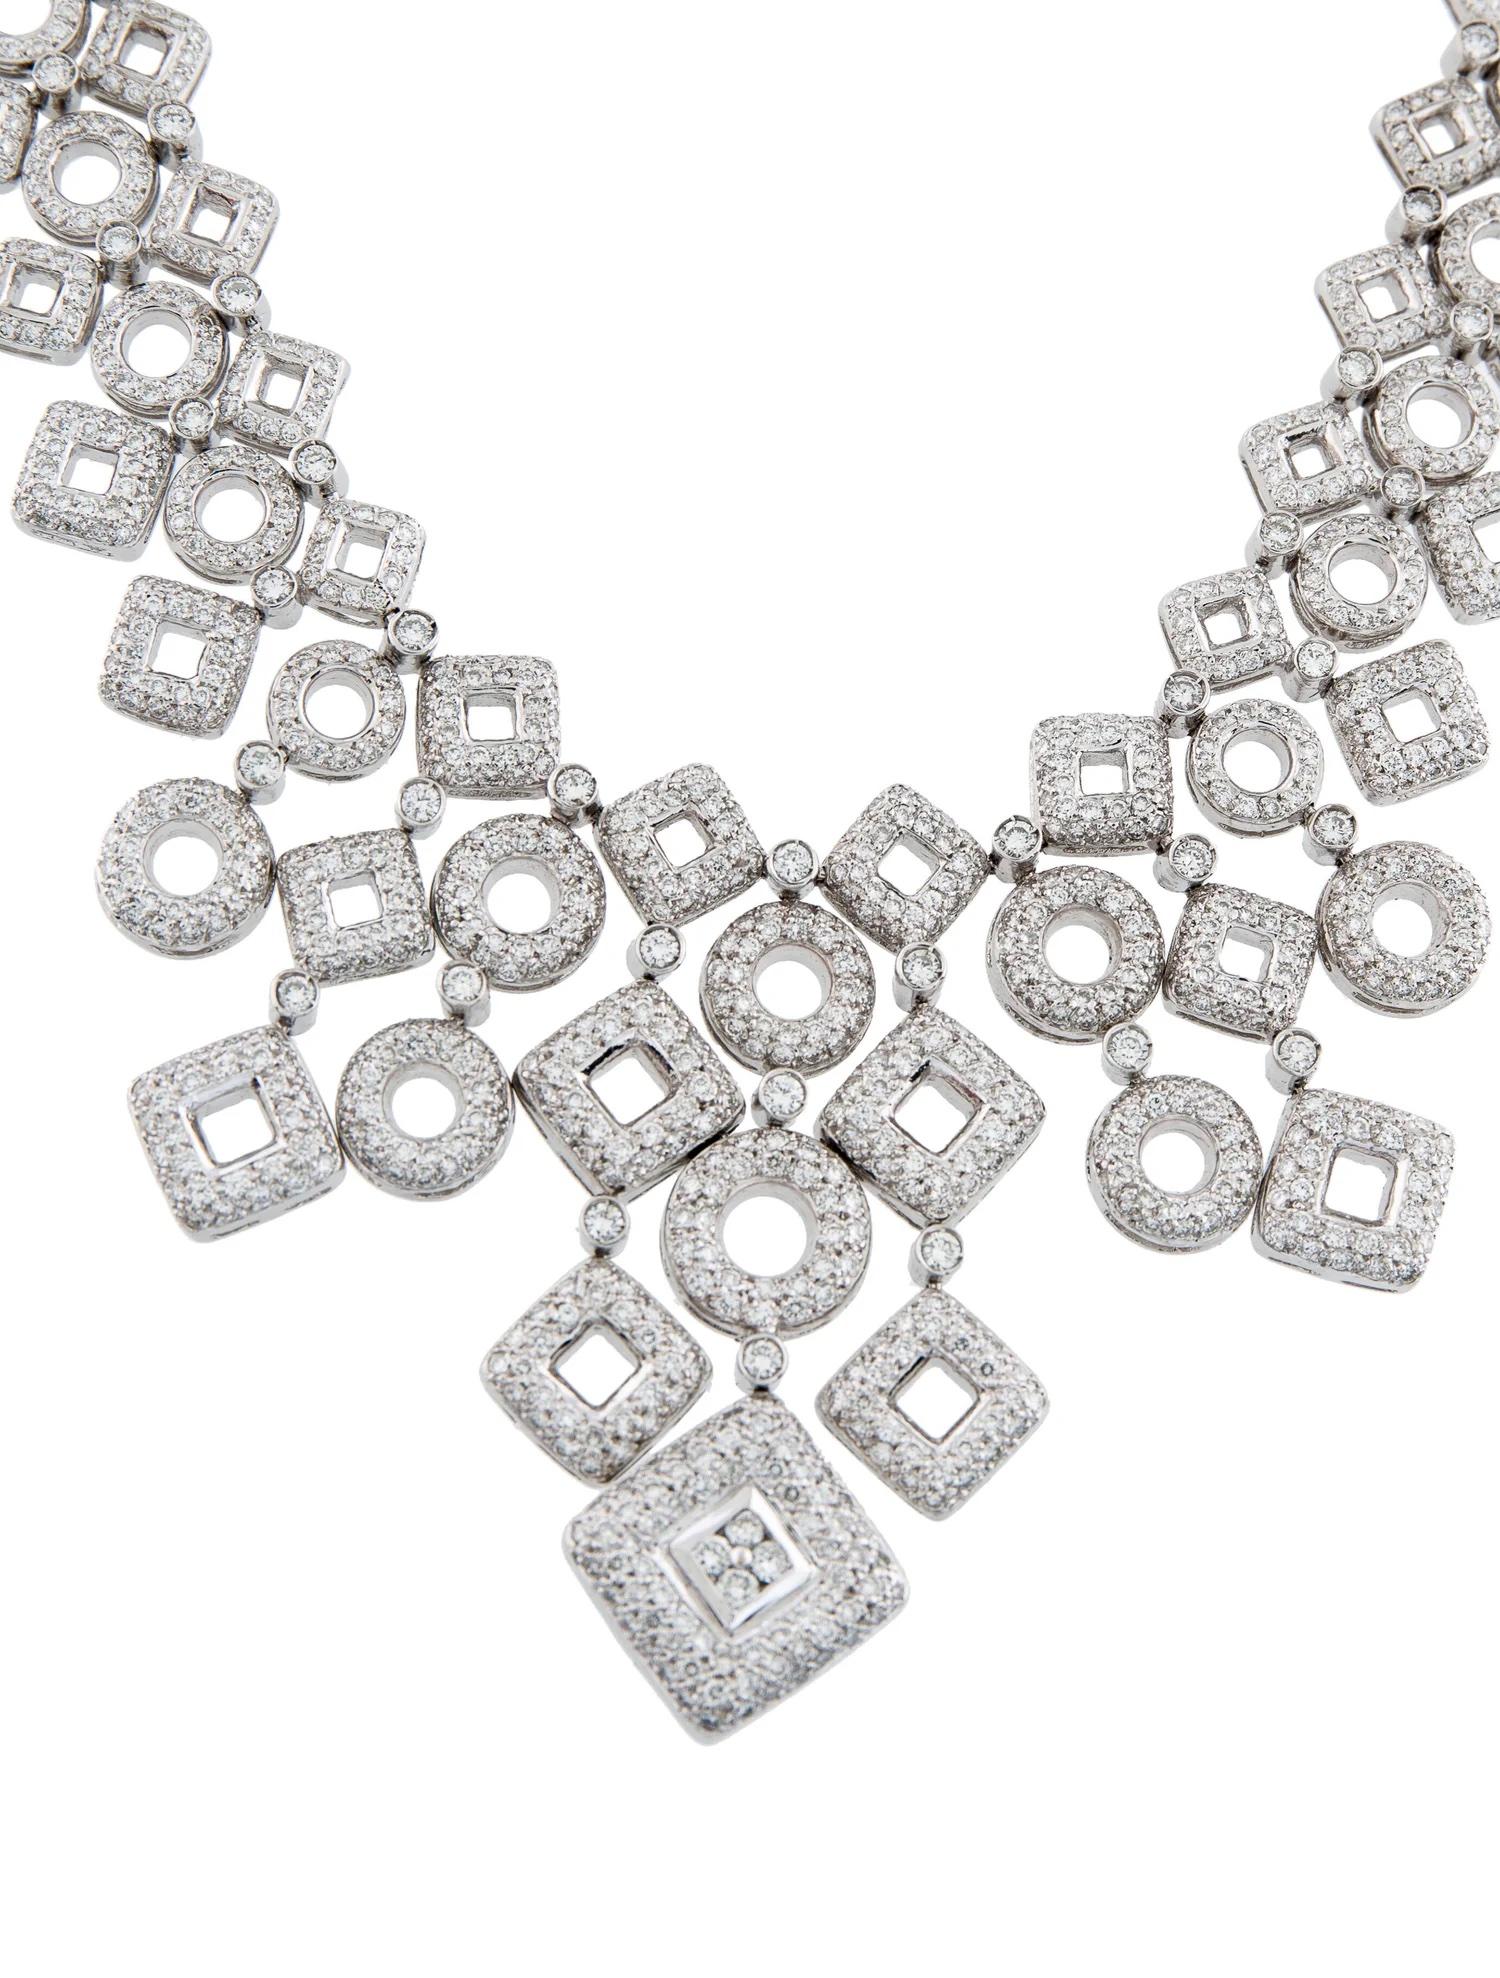 Vous parlez d'un collier qui fait sensation !

Ce collier est serti en or blanc 18 carats avec 1 089 diamants ronds pesant 7,03ctw. 
(G-H/SI en qualité).

Il mesure 17